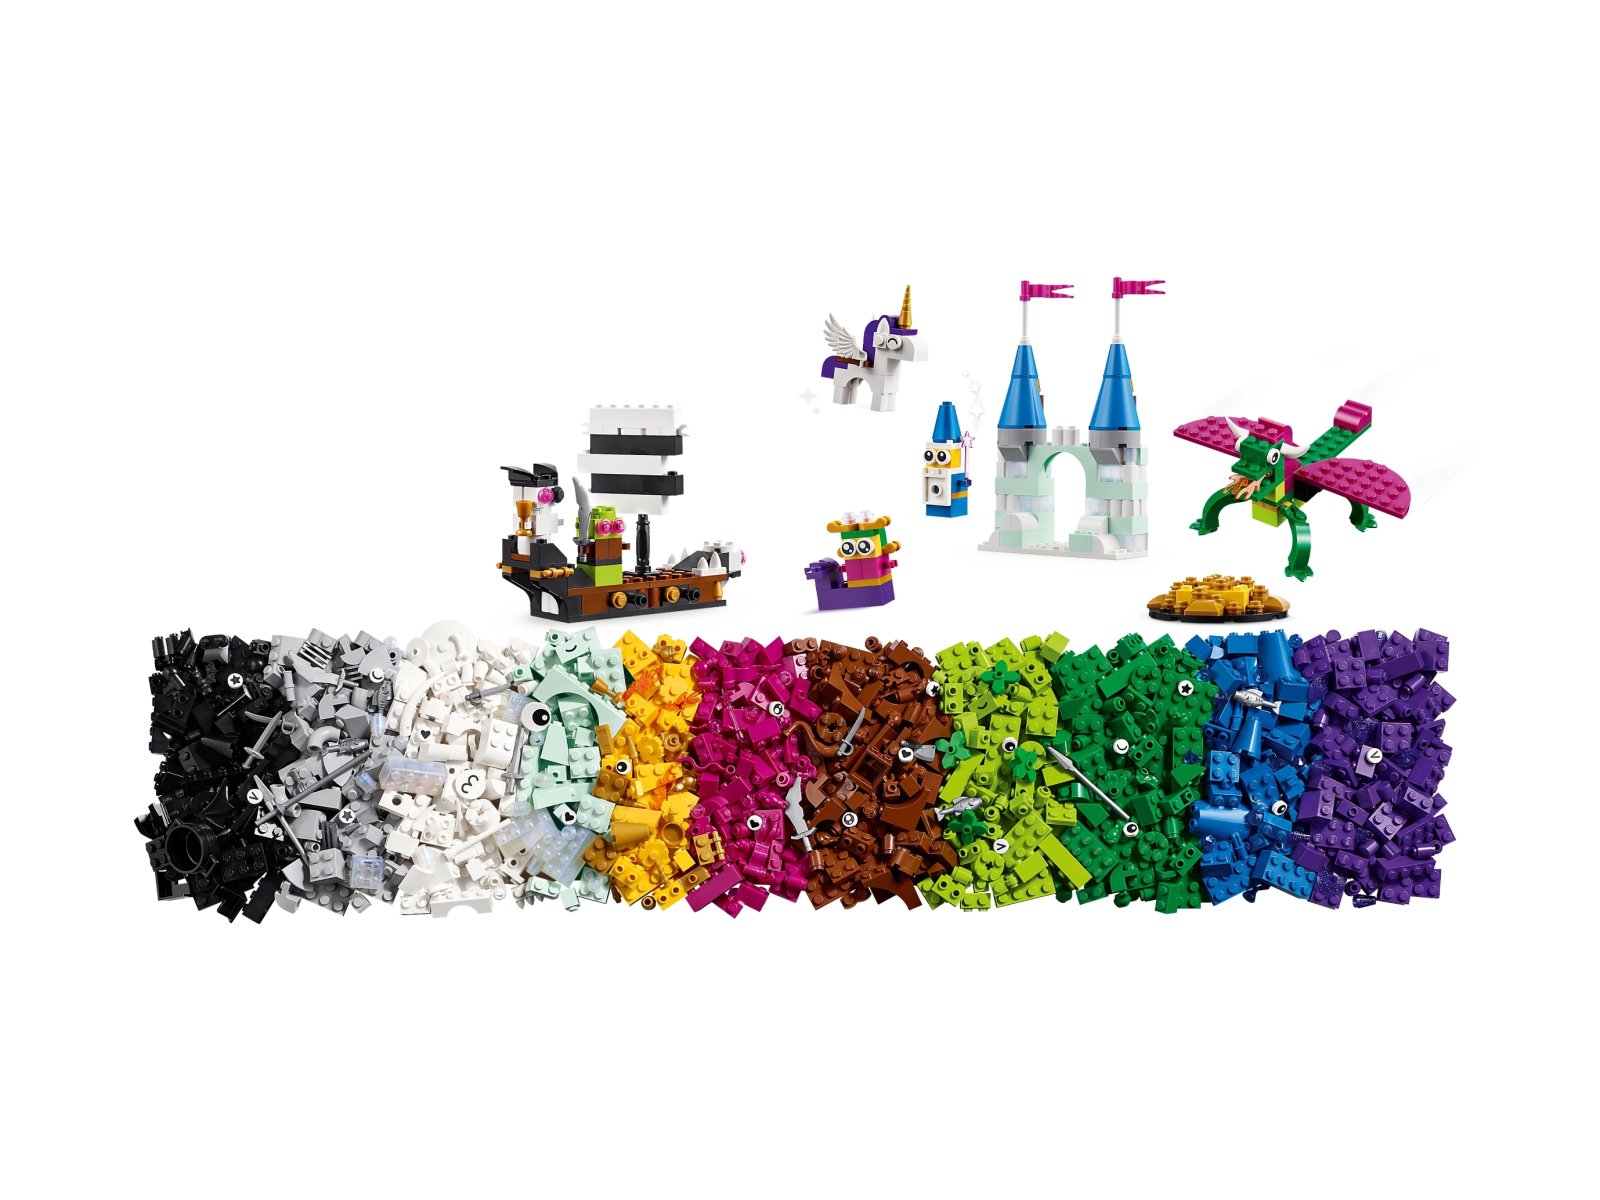 LEGO 11033 Classic Kreatywny wszechświat fantazji